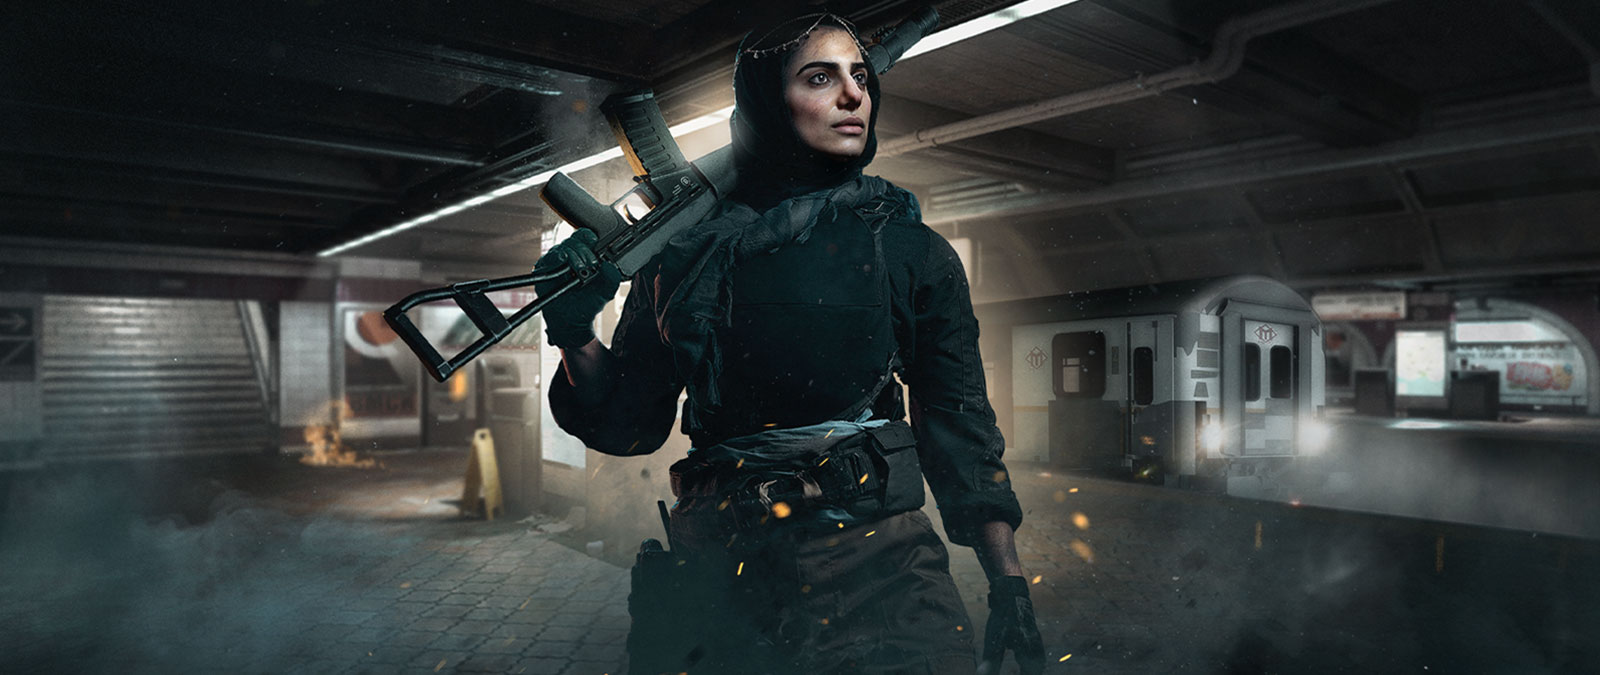 Personnage de Call of Duty: Modern Warfare tenant une arme dans une station de métro